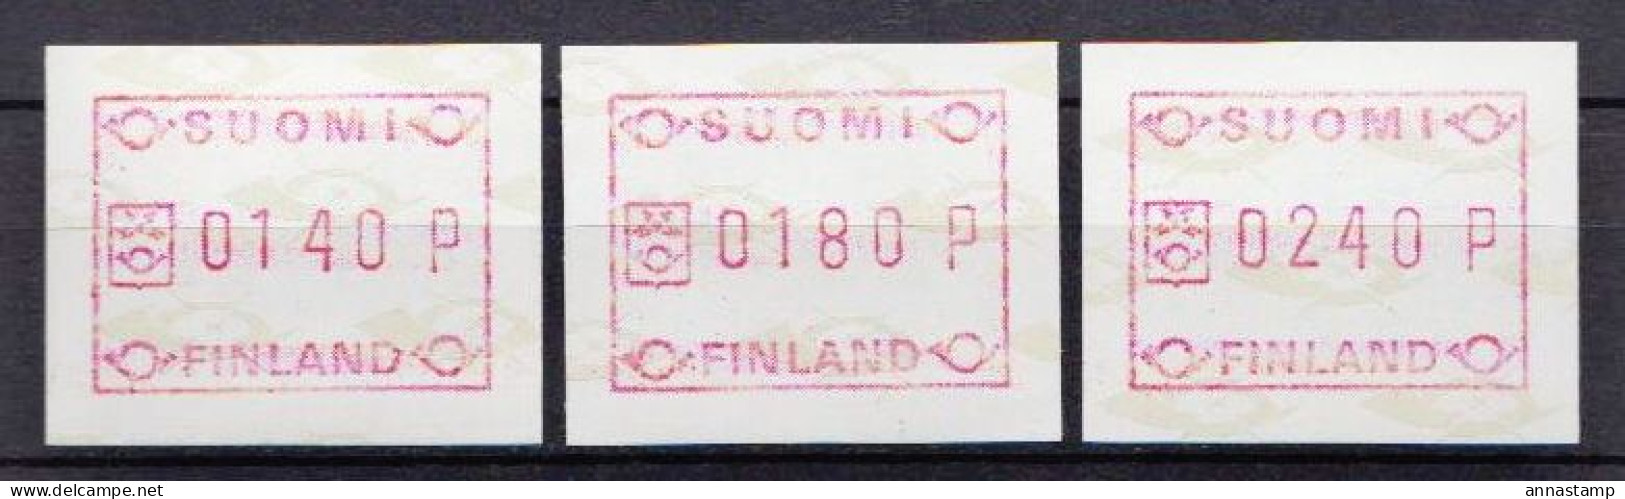 Finland MNH Stamps - Vignette [ATM]